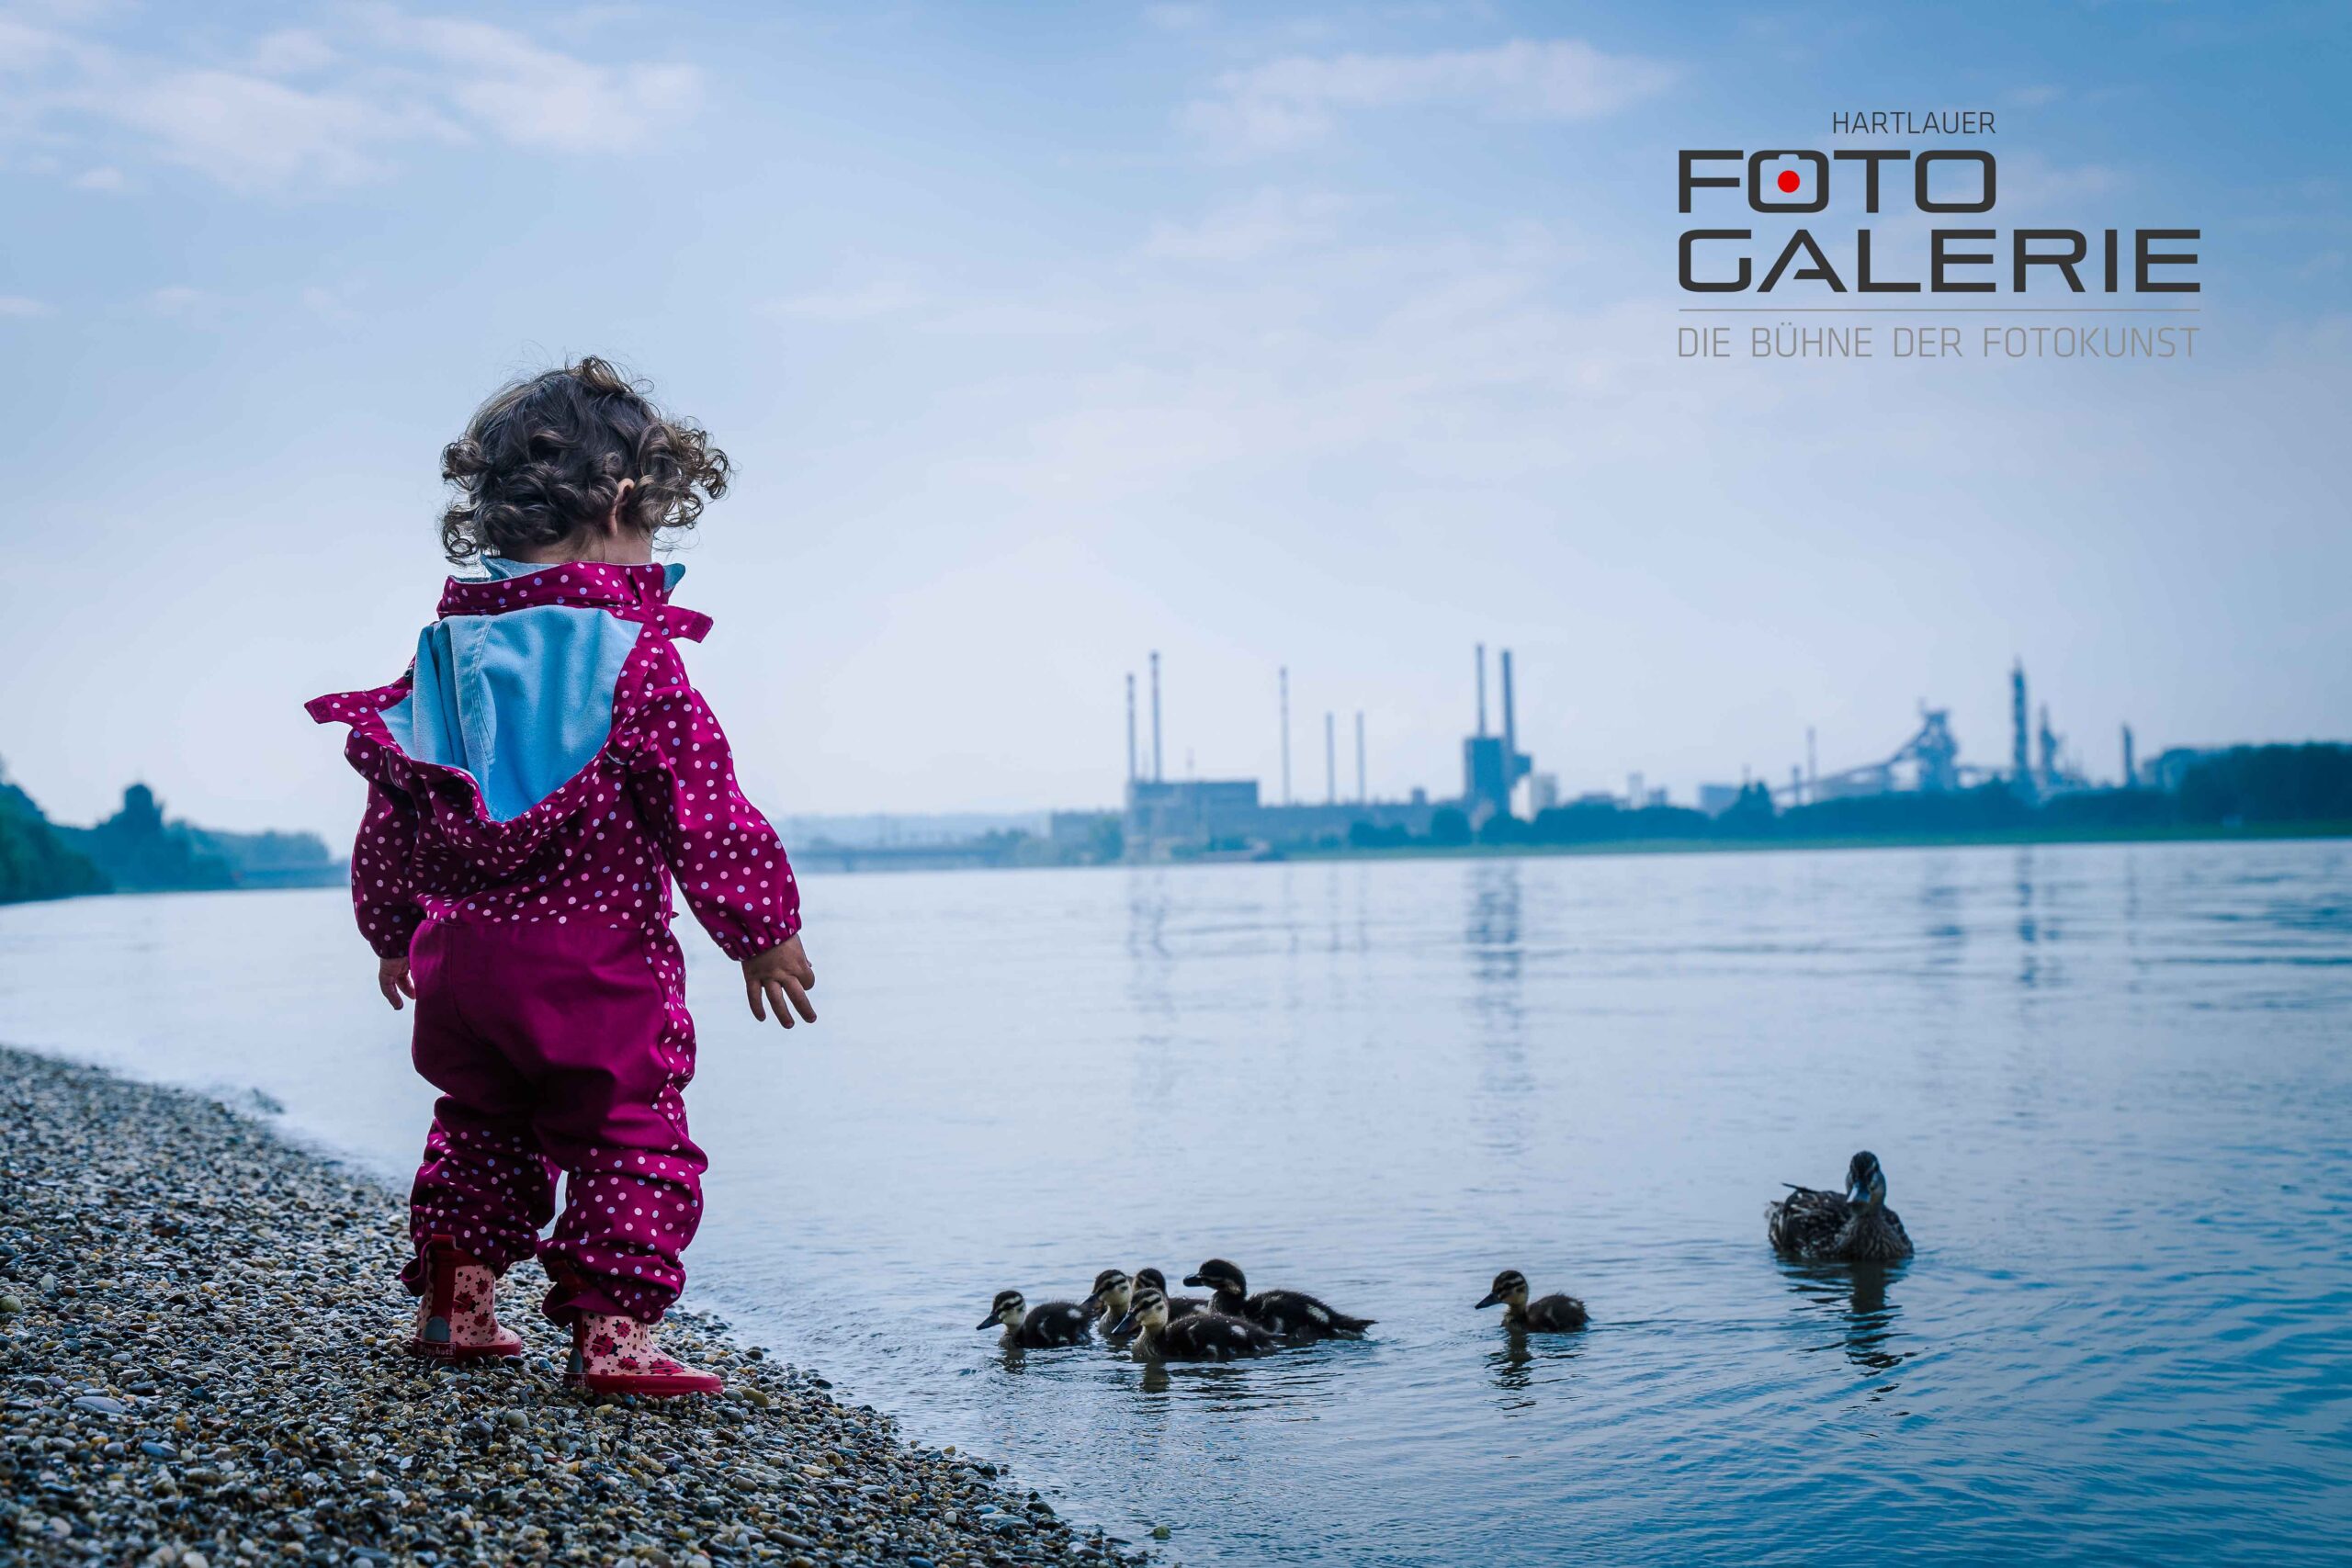 Familienfotos an der Donau Familienfotografin photo Angie gewinnt internationalen Fotowettbewerb der Hartlauer Fotogalerie in Linz